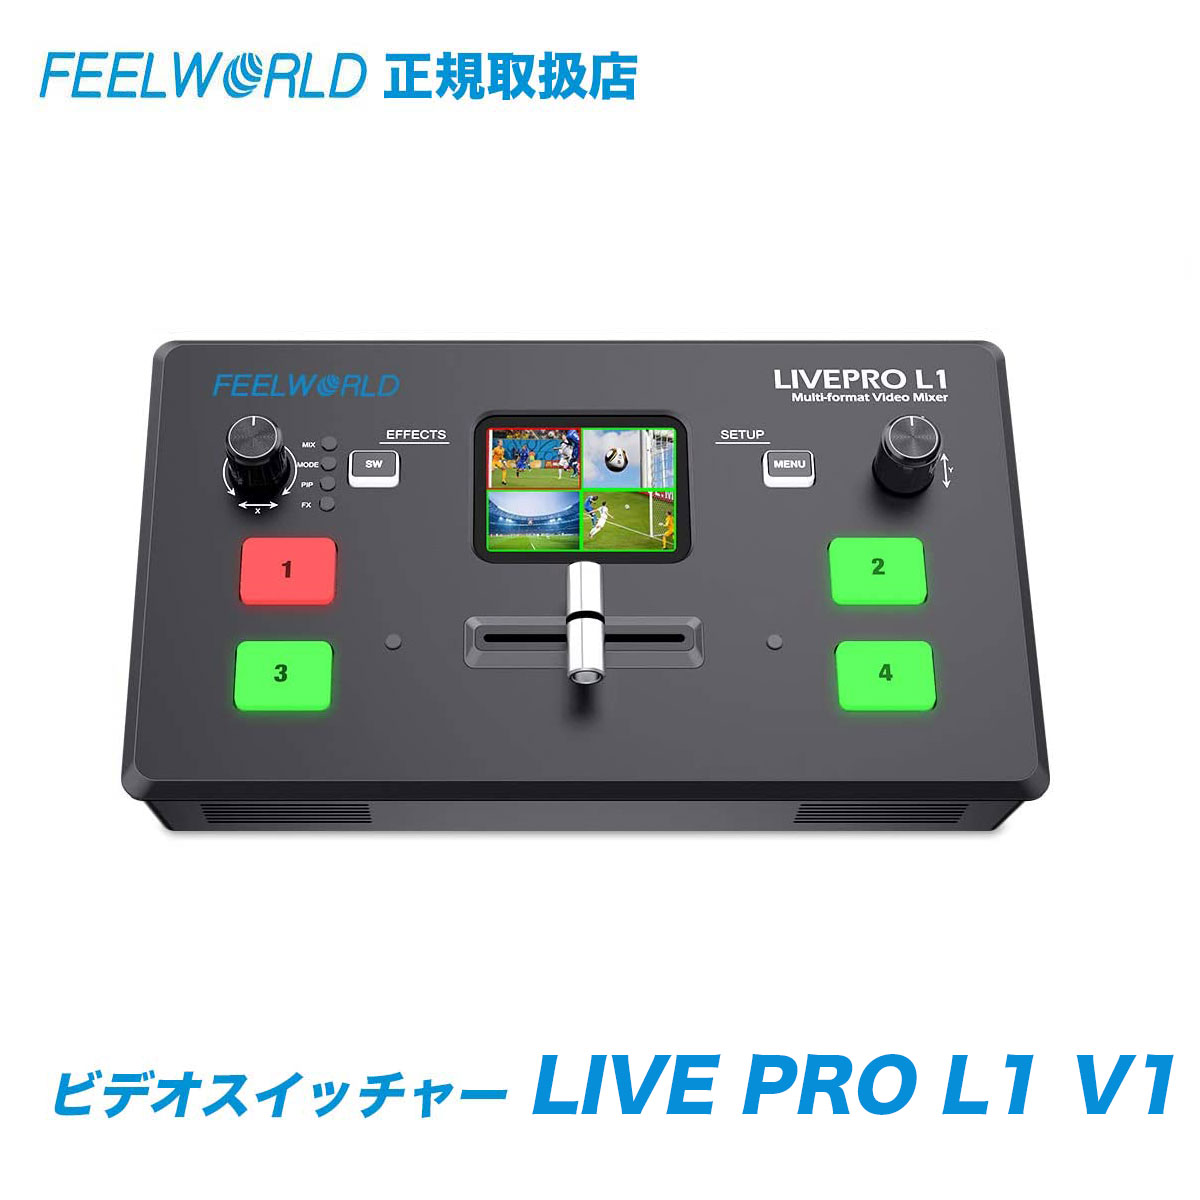 配送員設置送料無料 Feelworld LIVEPRO L1 ライブ放送ビデオスイッチャー 4xHDMI入力 爆売り 2インチLCDディスプレイリアルタイムリアルタイムストリーミングマルチカメラ制作 USB3.0インターフェースとHDMI出力はPGMとPVWを独立して設定できます